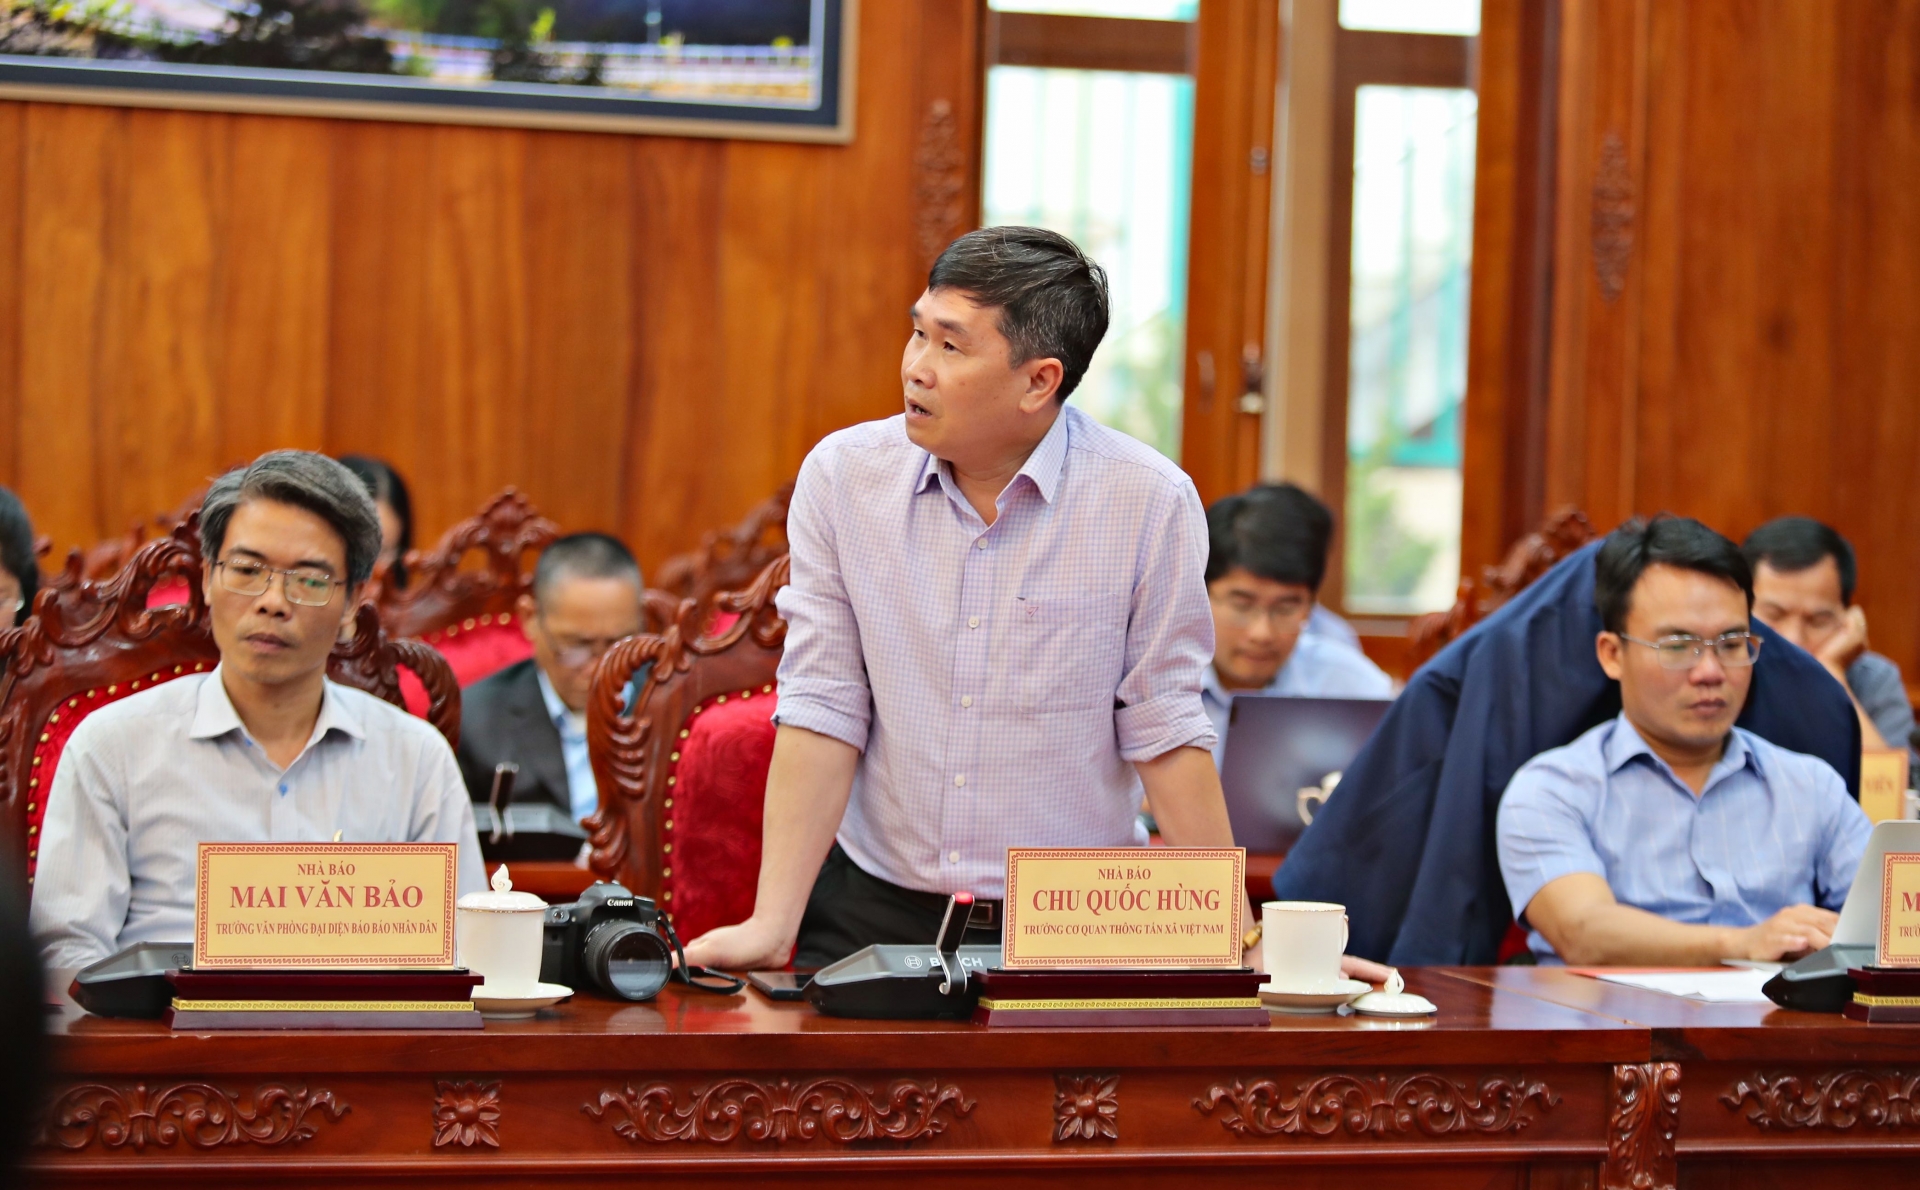 Nhà báo Chu Quốc Hùng, Trưởng đại diện cơ quan thường trú Thông tấn xã Việt Nam tại Lâm Đồng phát biểu